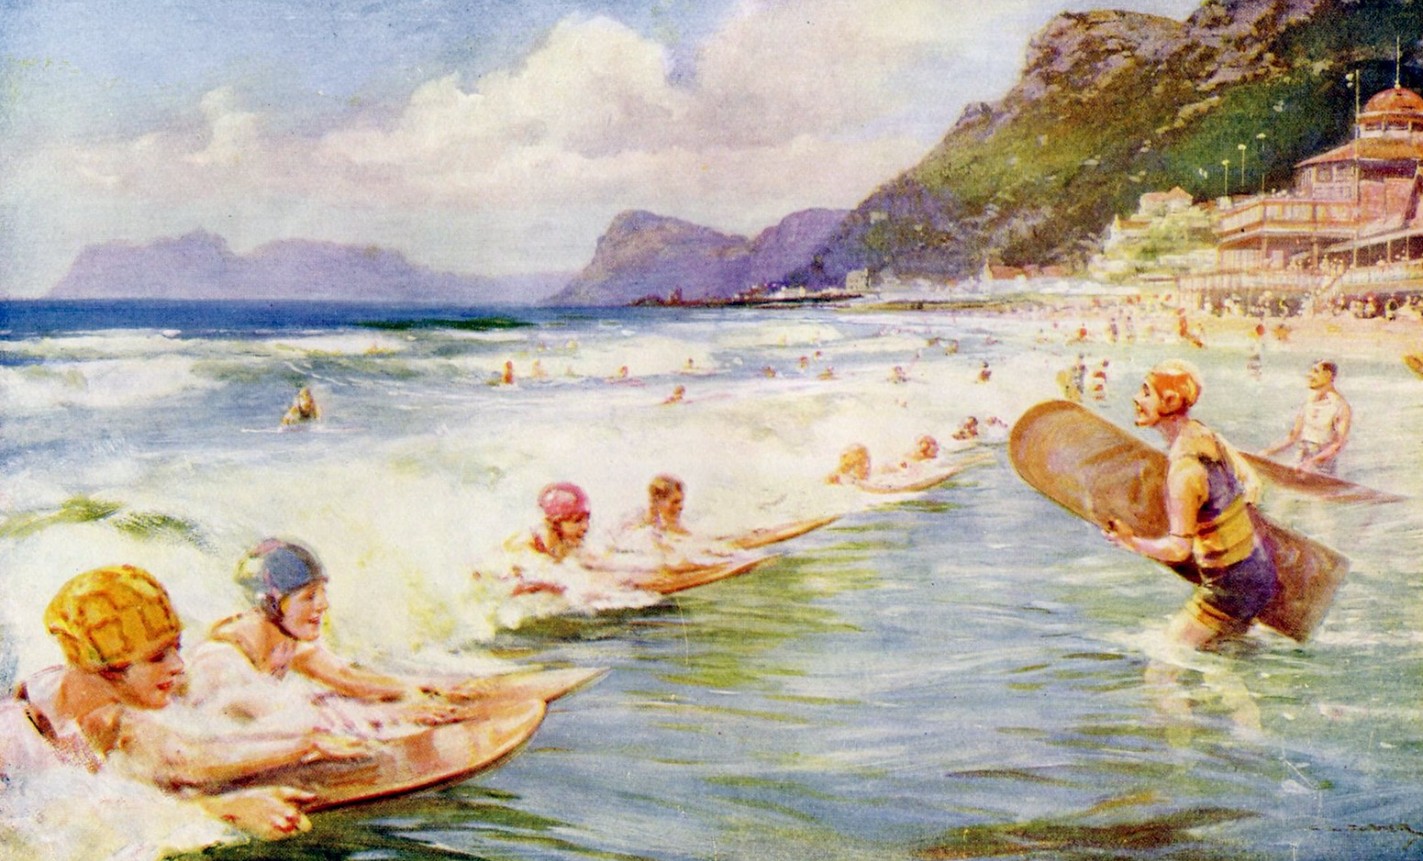 История серфинга, часть 4: упоминания о серфинге в литературе 20 века